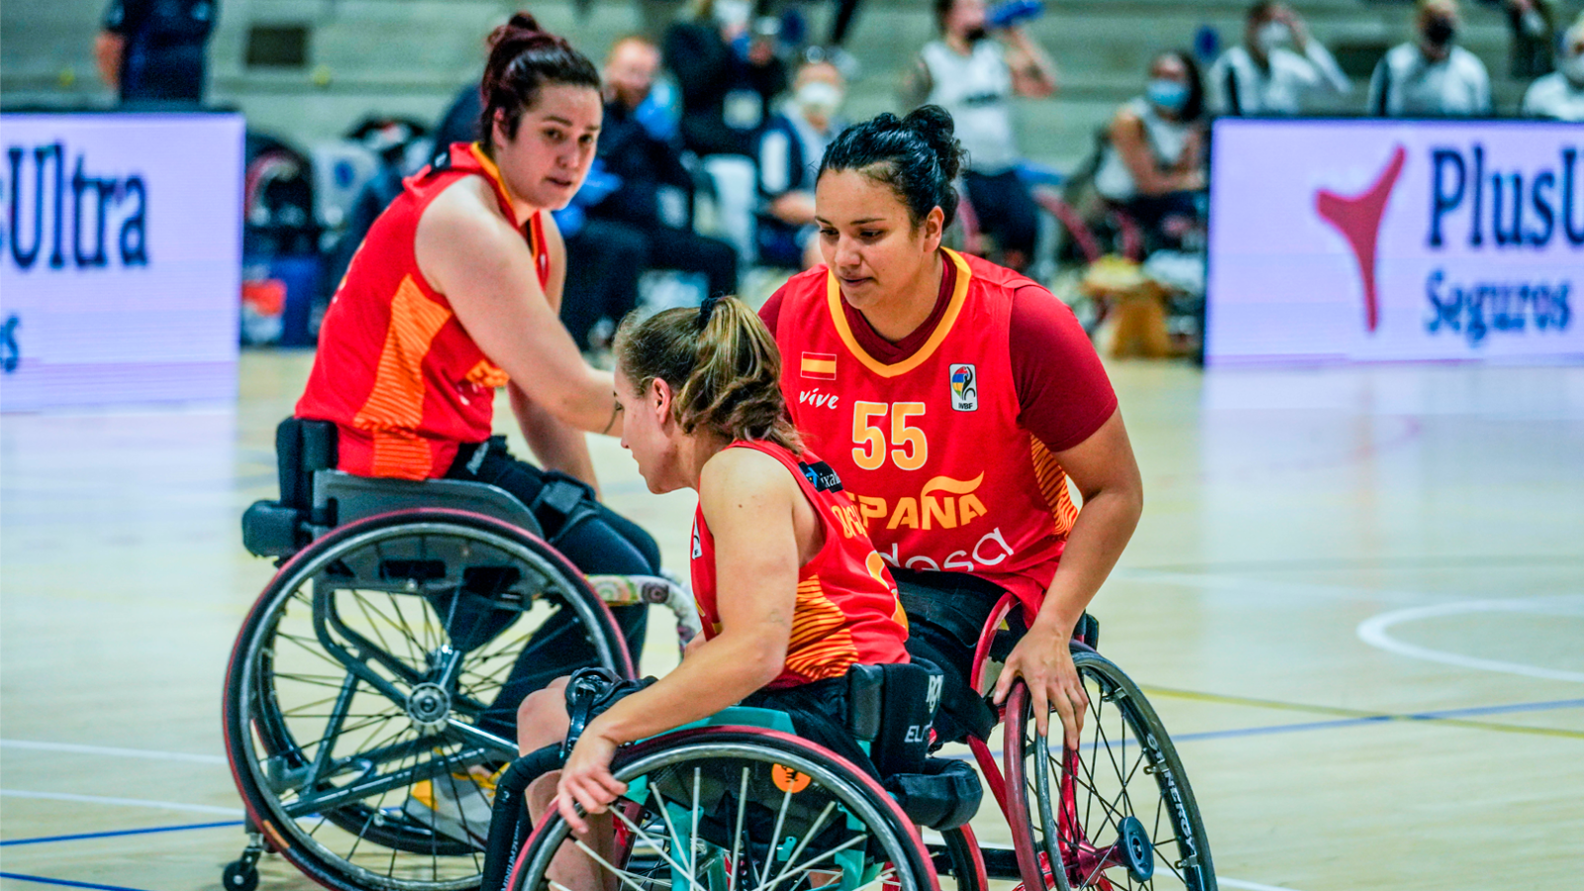 Plus Ultra Seguros aposta per l'esport adaptat amb el patrocini del Campionat d'Europa de Bàsquet amb cadira de rodes